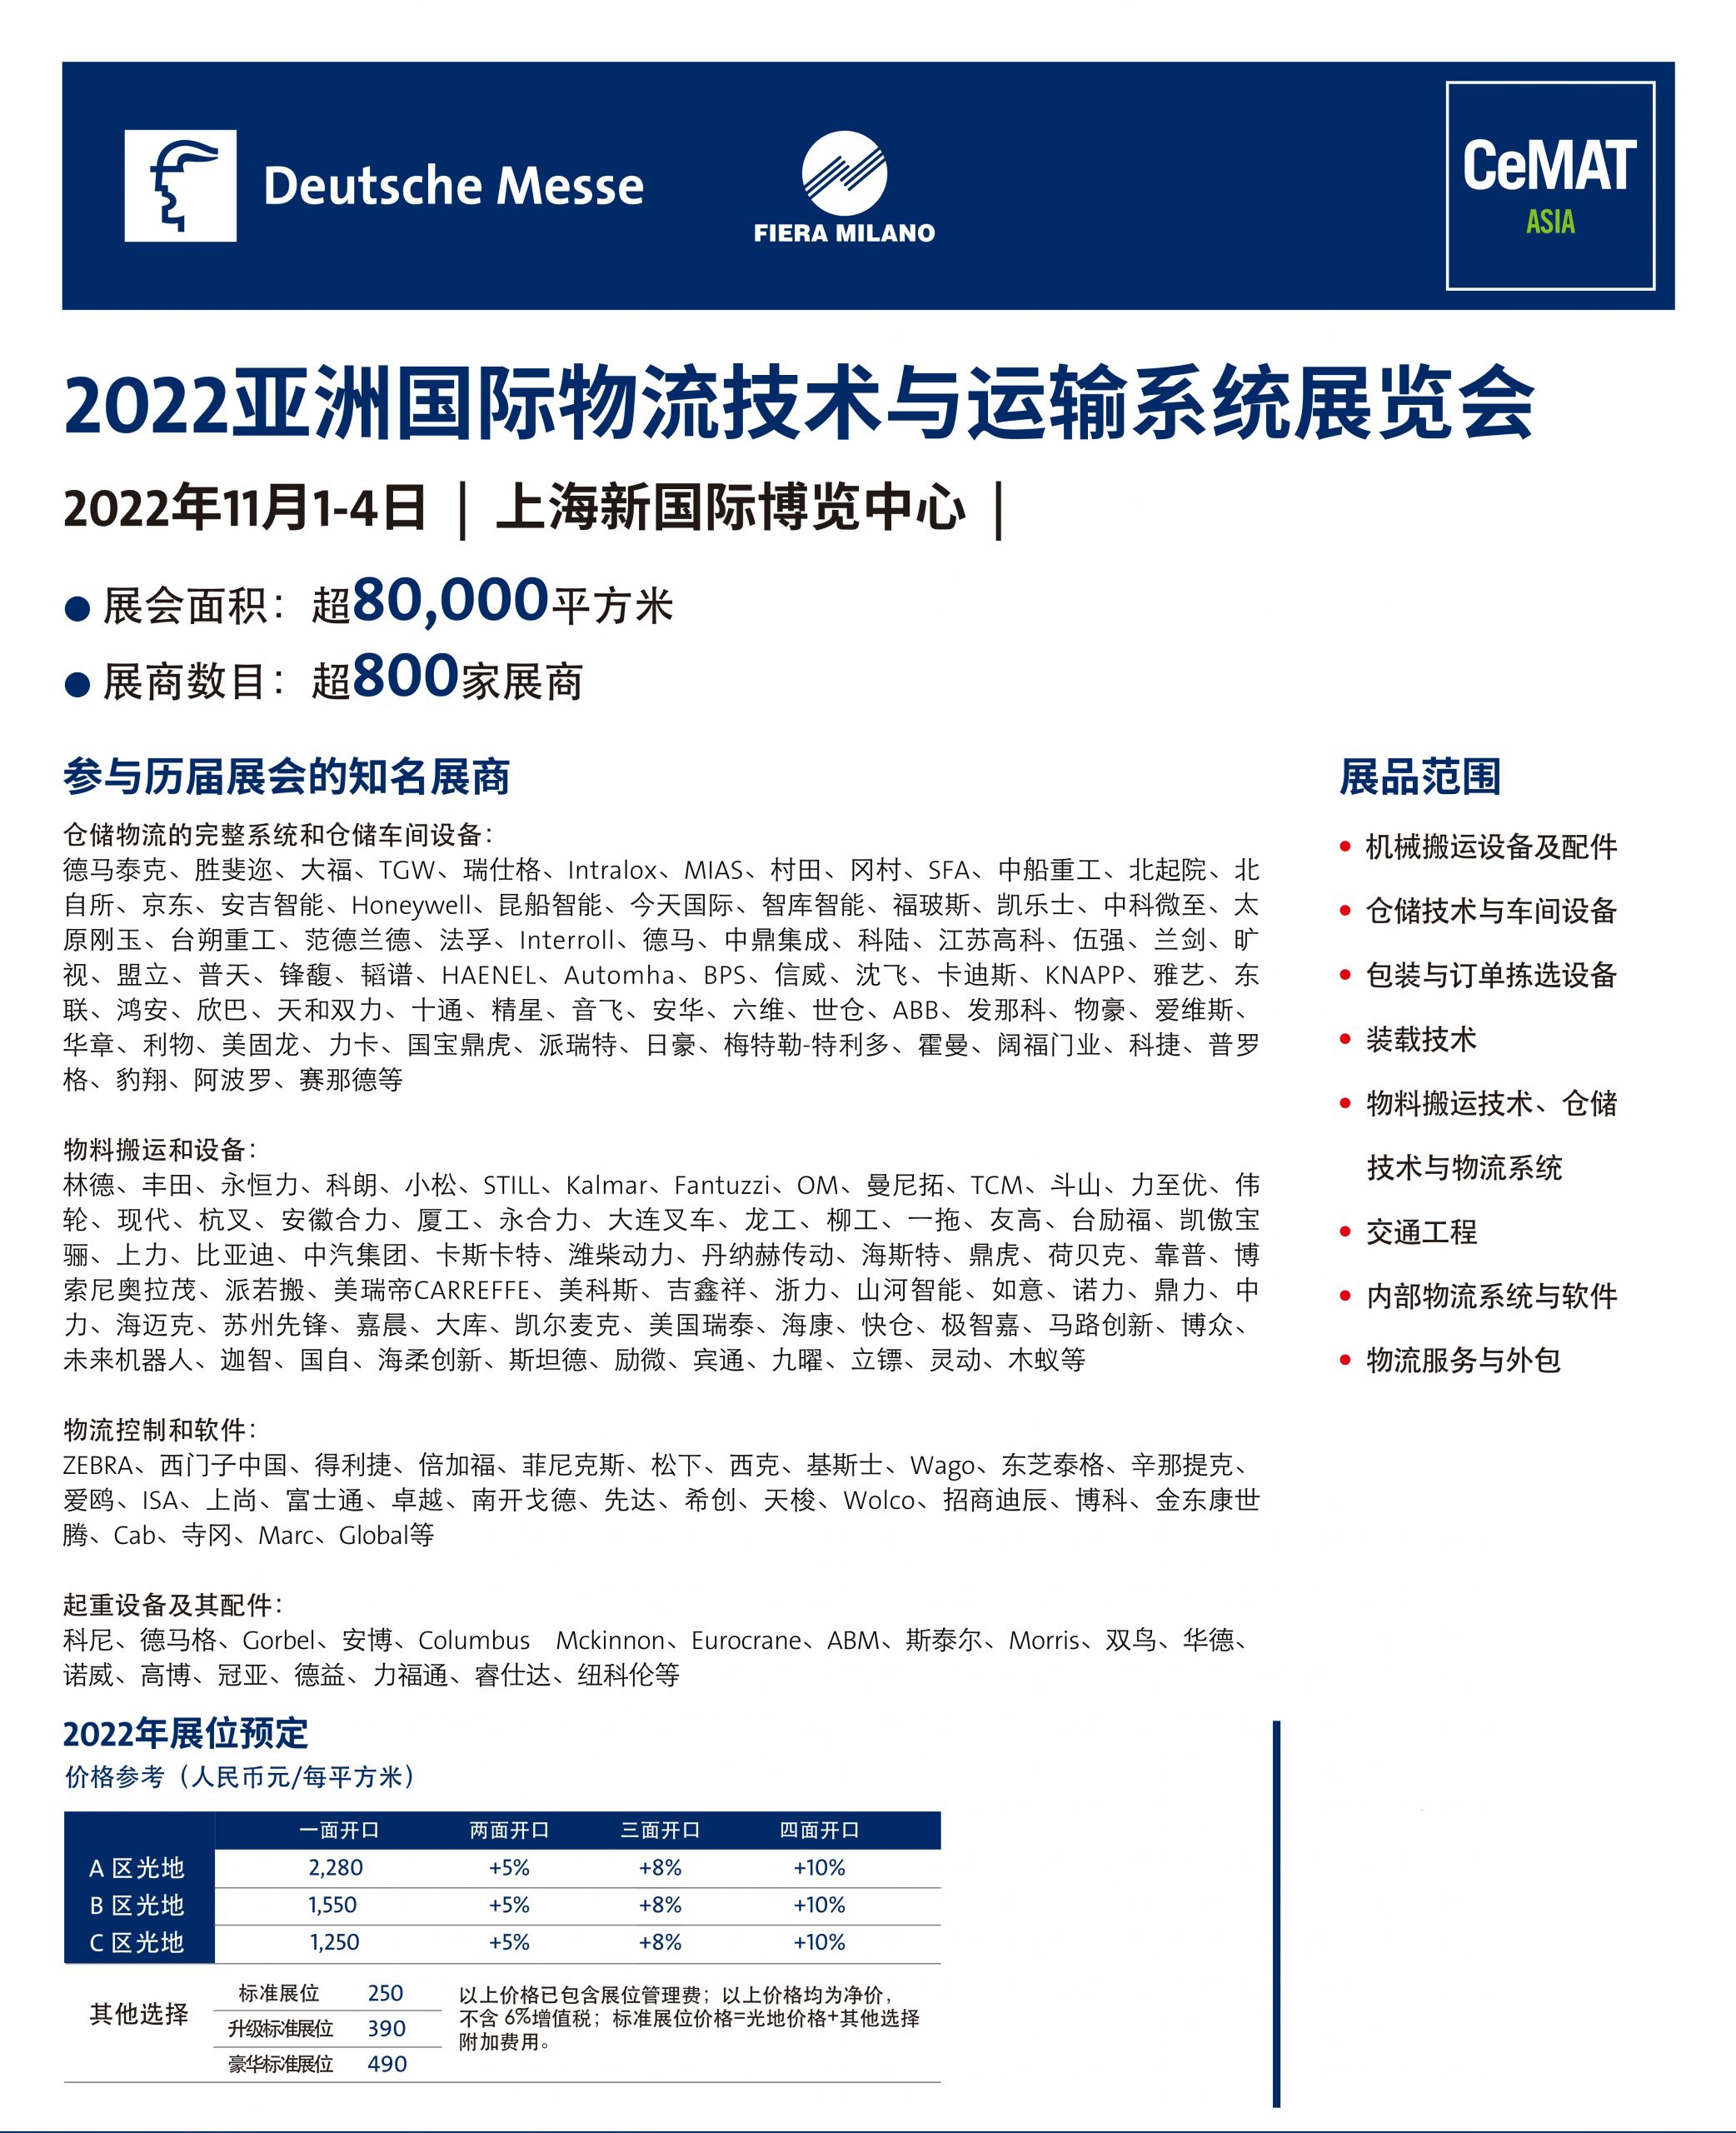 亚洲物流展|2022第23届亚洲国际物流技术与运输系统展览会·CeMAT